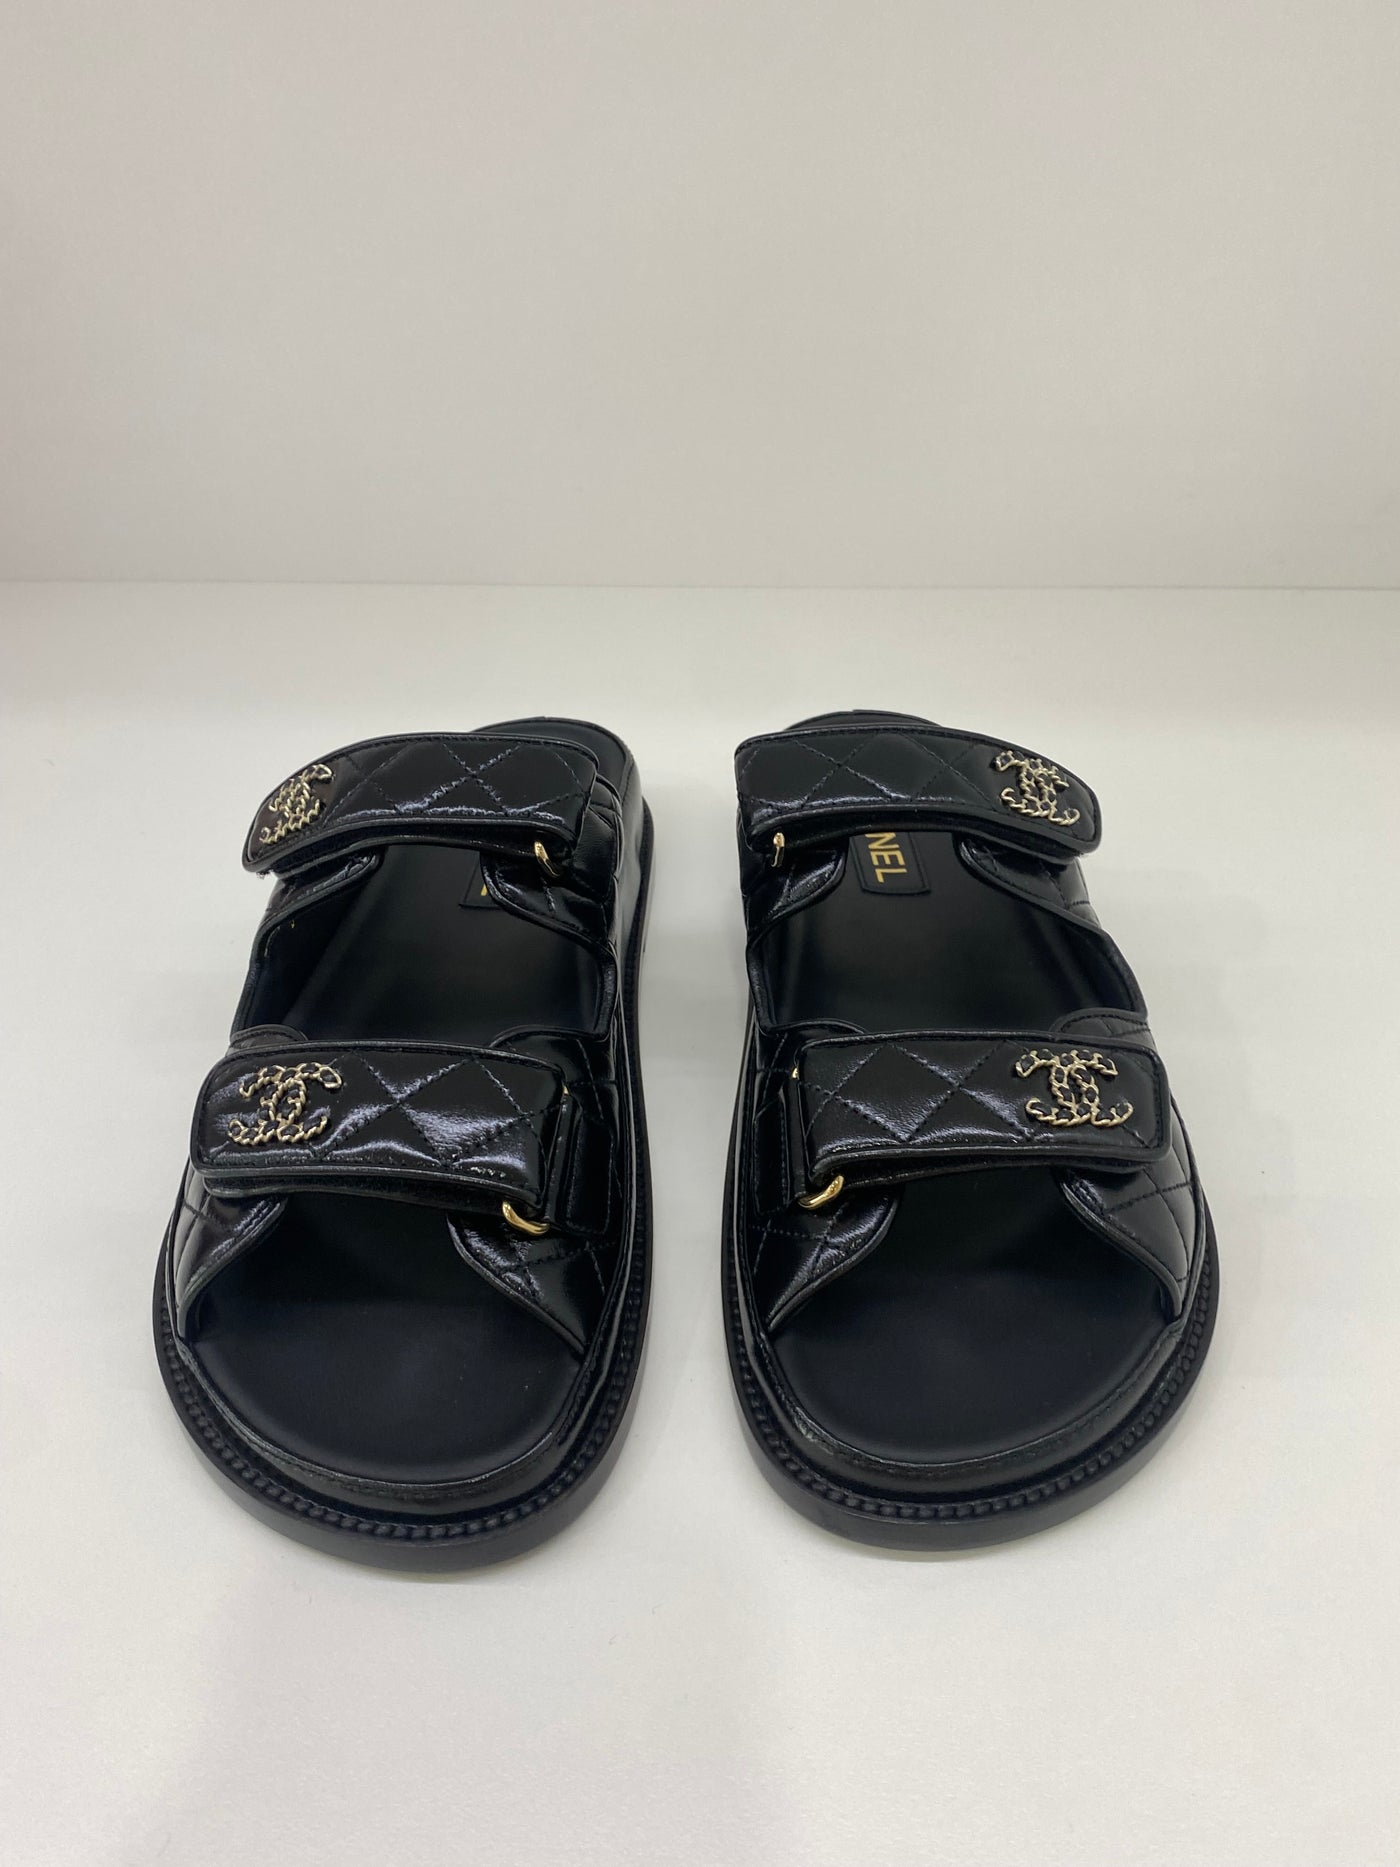 Chanel Dad Sandal Slide - Size 38